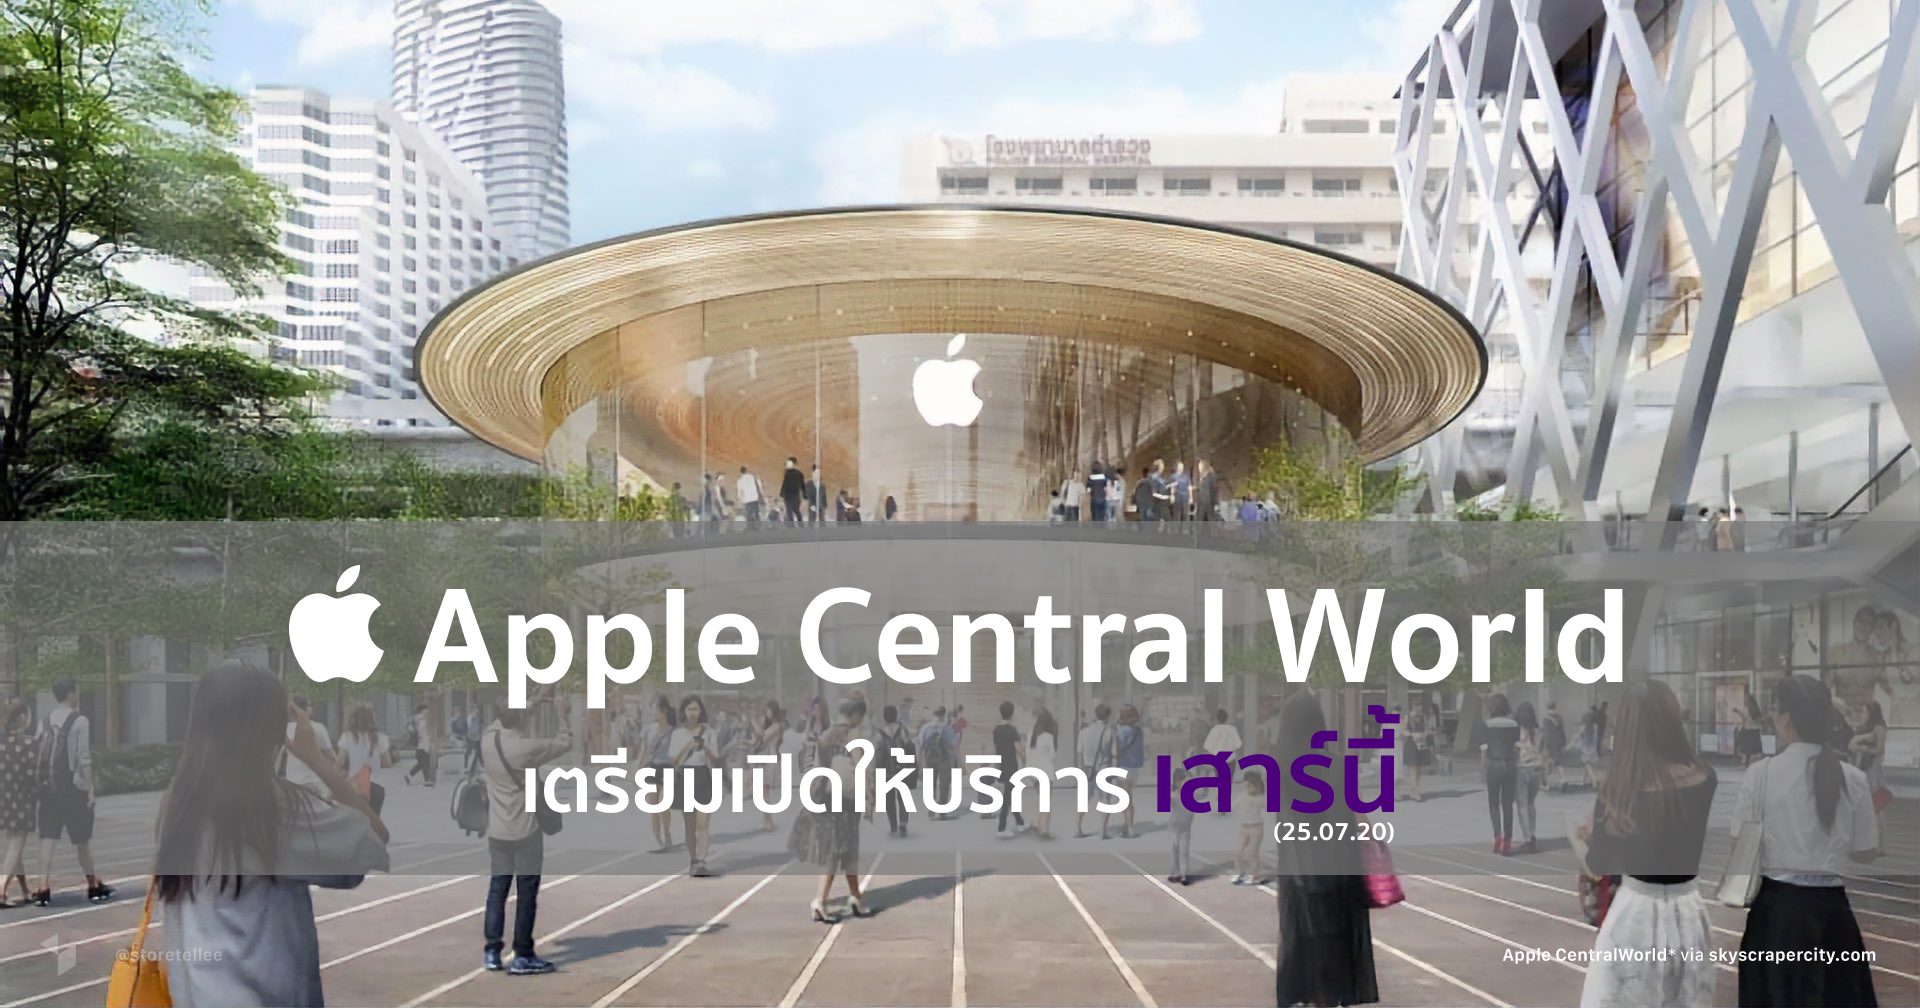 ลือ! Apple Store สาขา Central World เปิดตัวในไทย 25 ก.ค. นี้